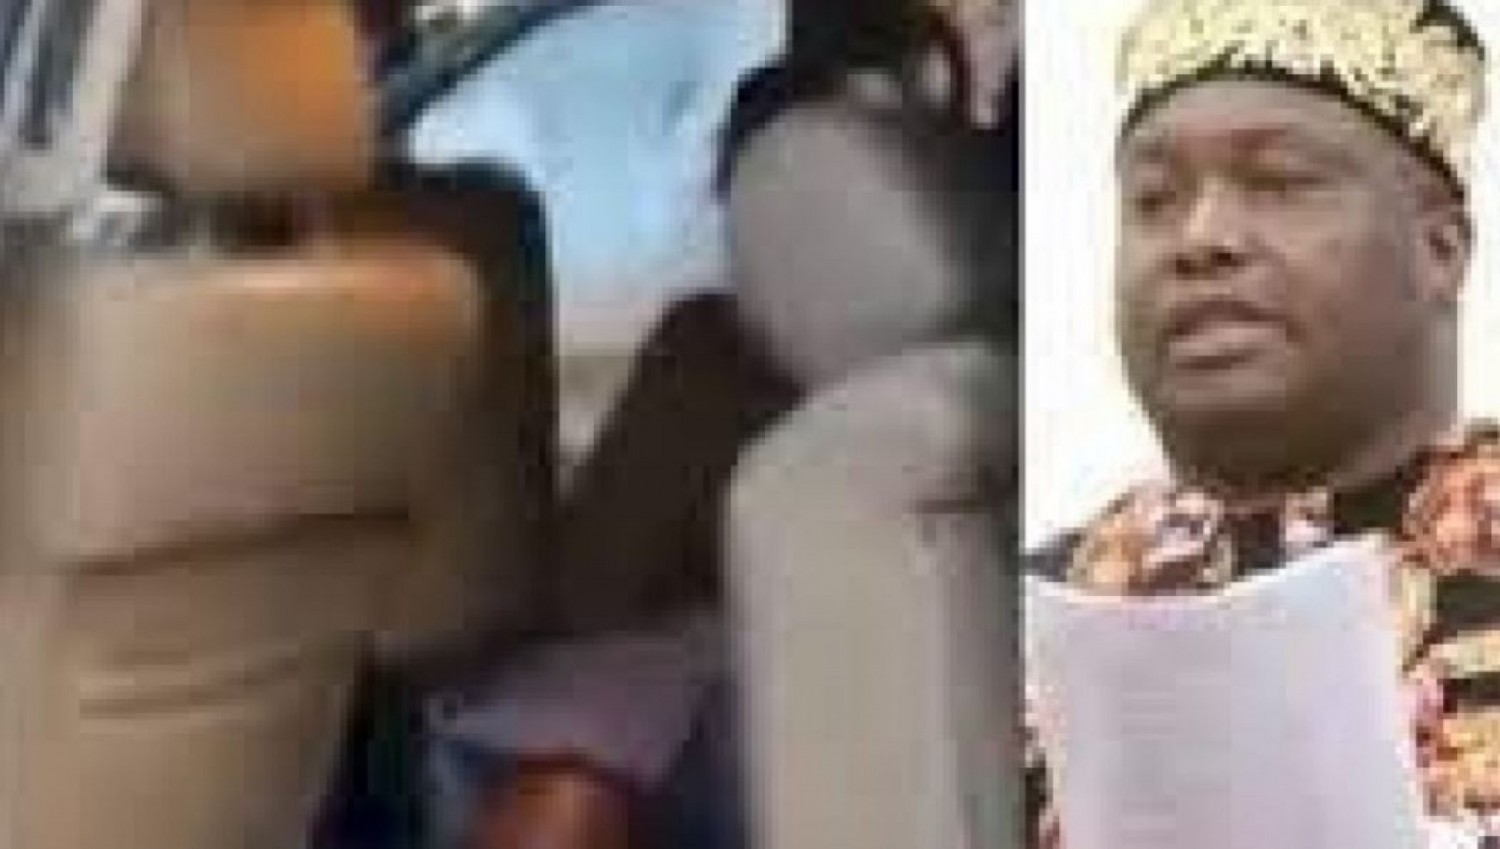 Nigeria : Le convoi d'un sénateur visé par des tirs dans l'Etat d'Anambra, cinq morts